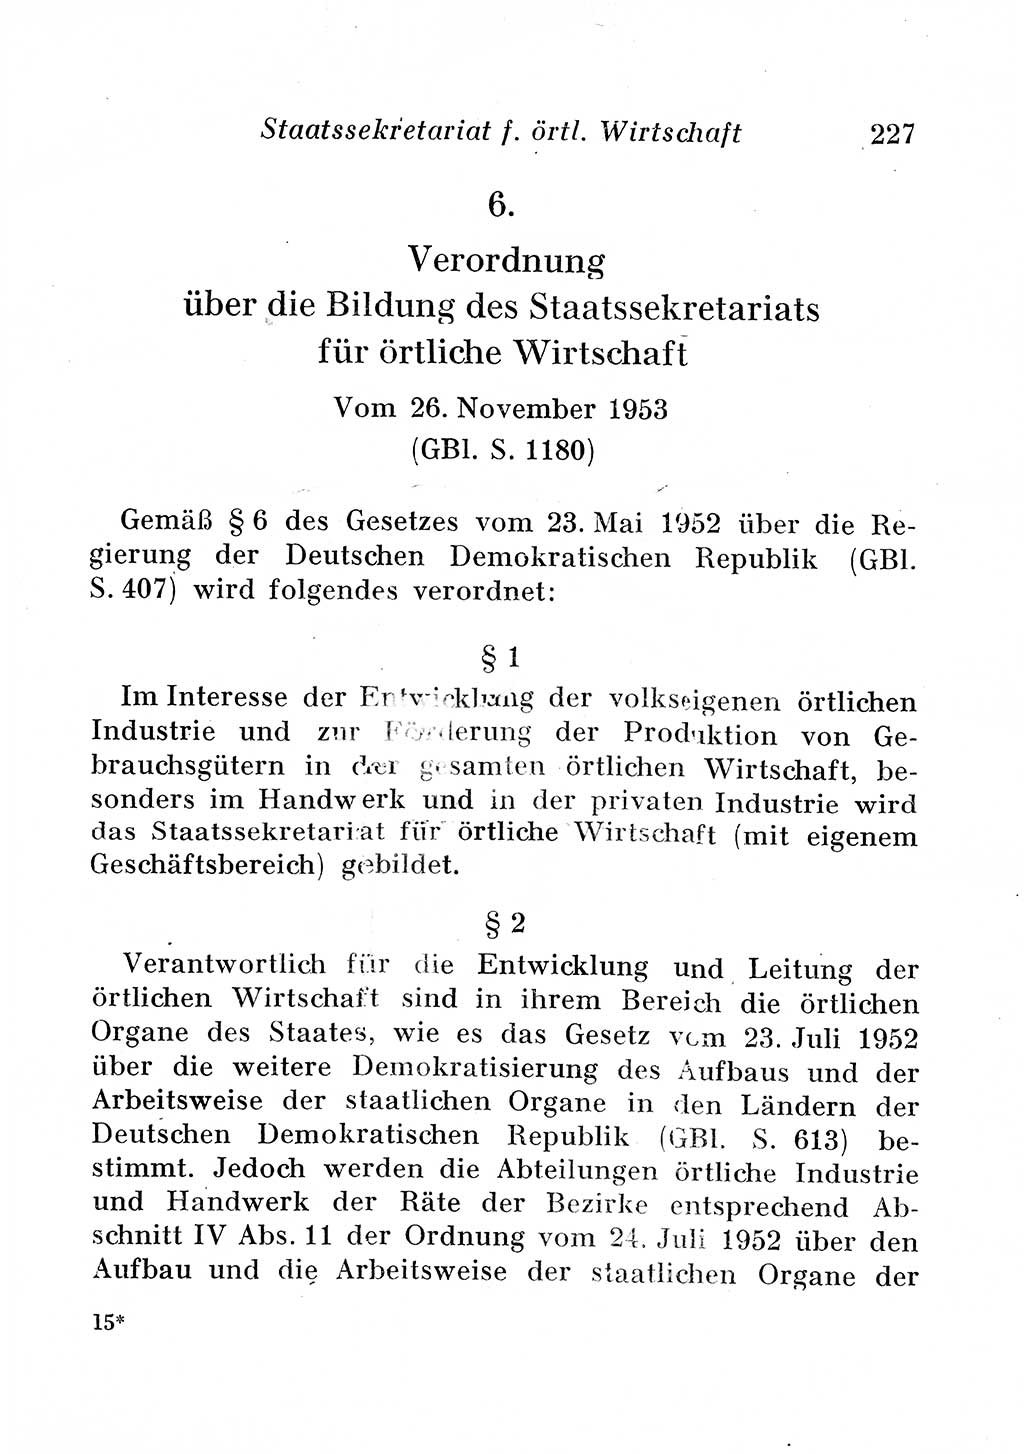 Staats- und verwaltungsrechtliche Gesetze der Deutschen Demokratischen Republik (DDR) 1958, Seite 227 (StVerwR Ges. DDR 1958, S. 227)